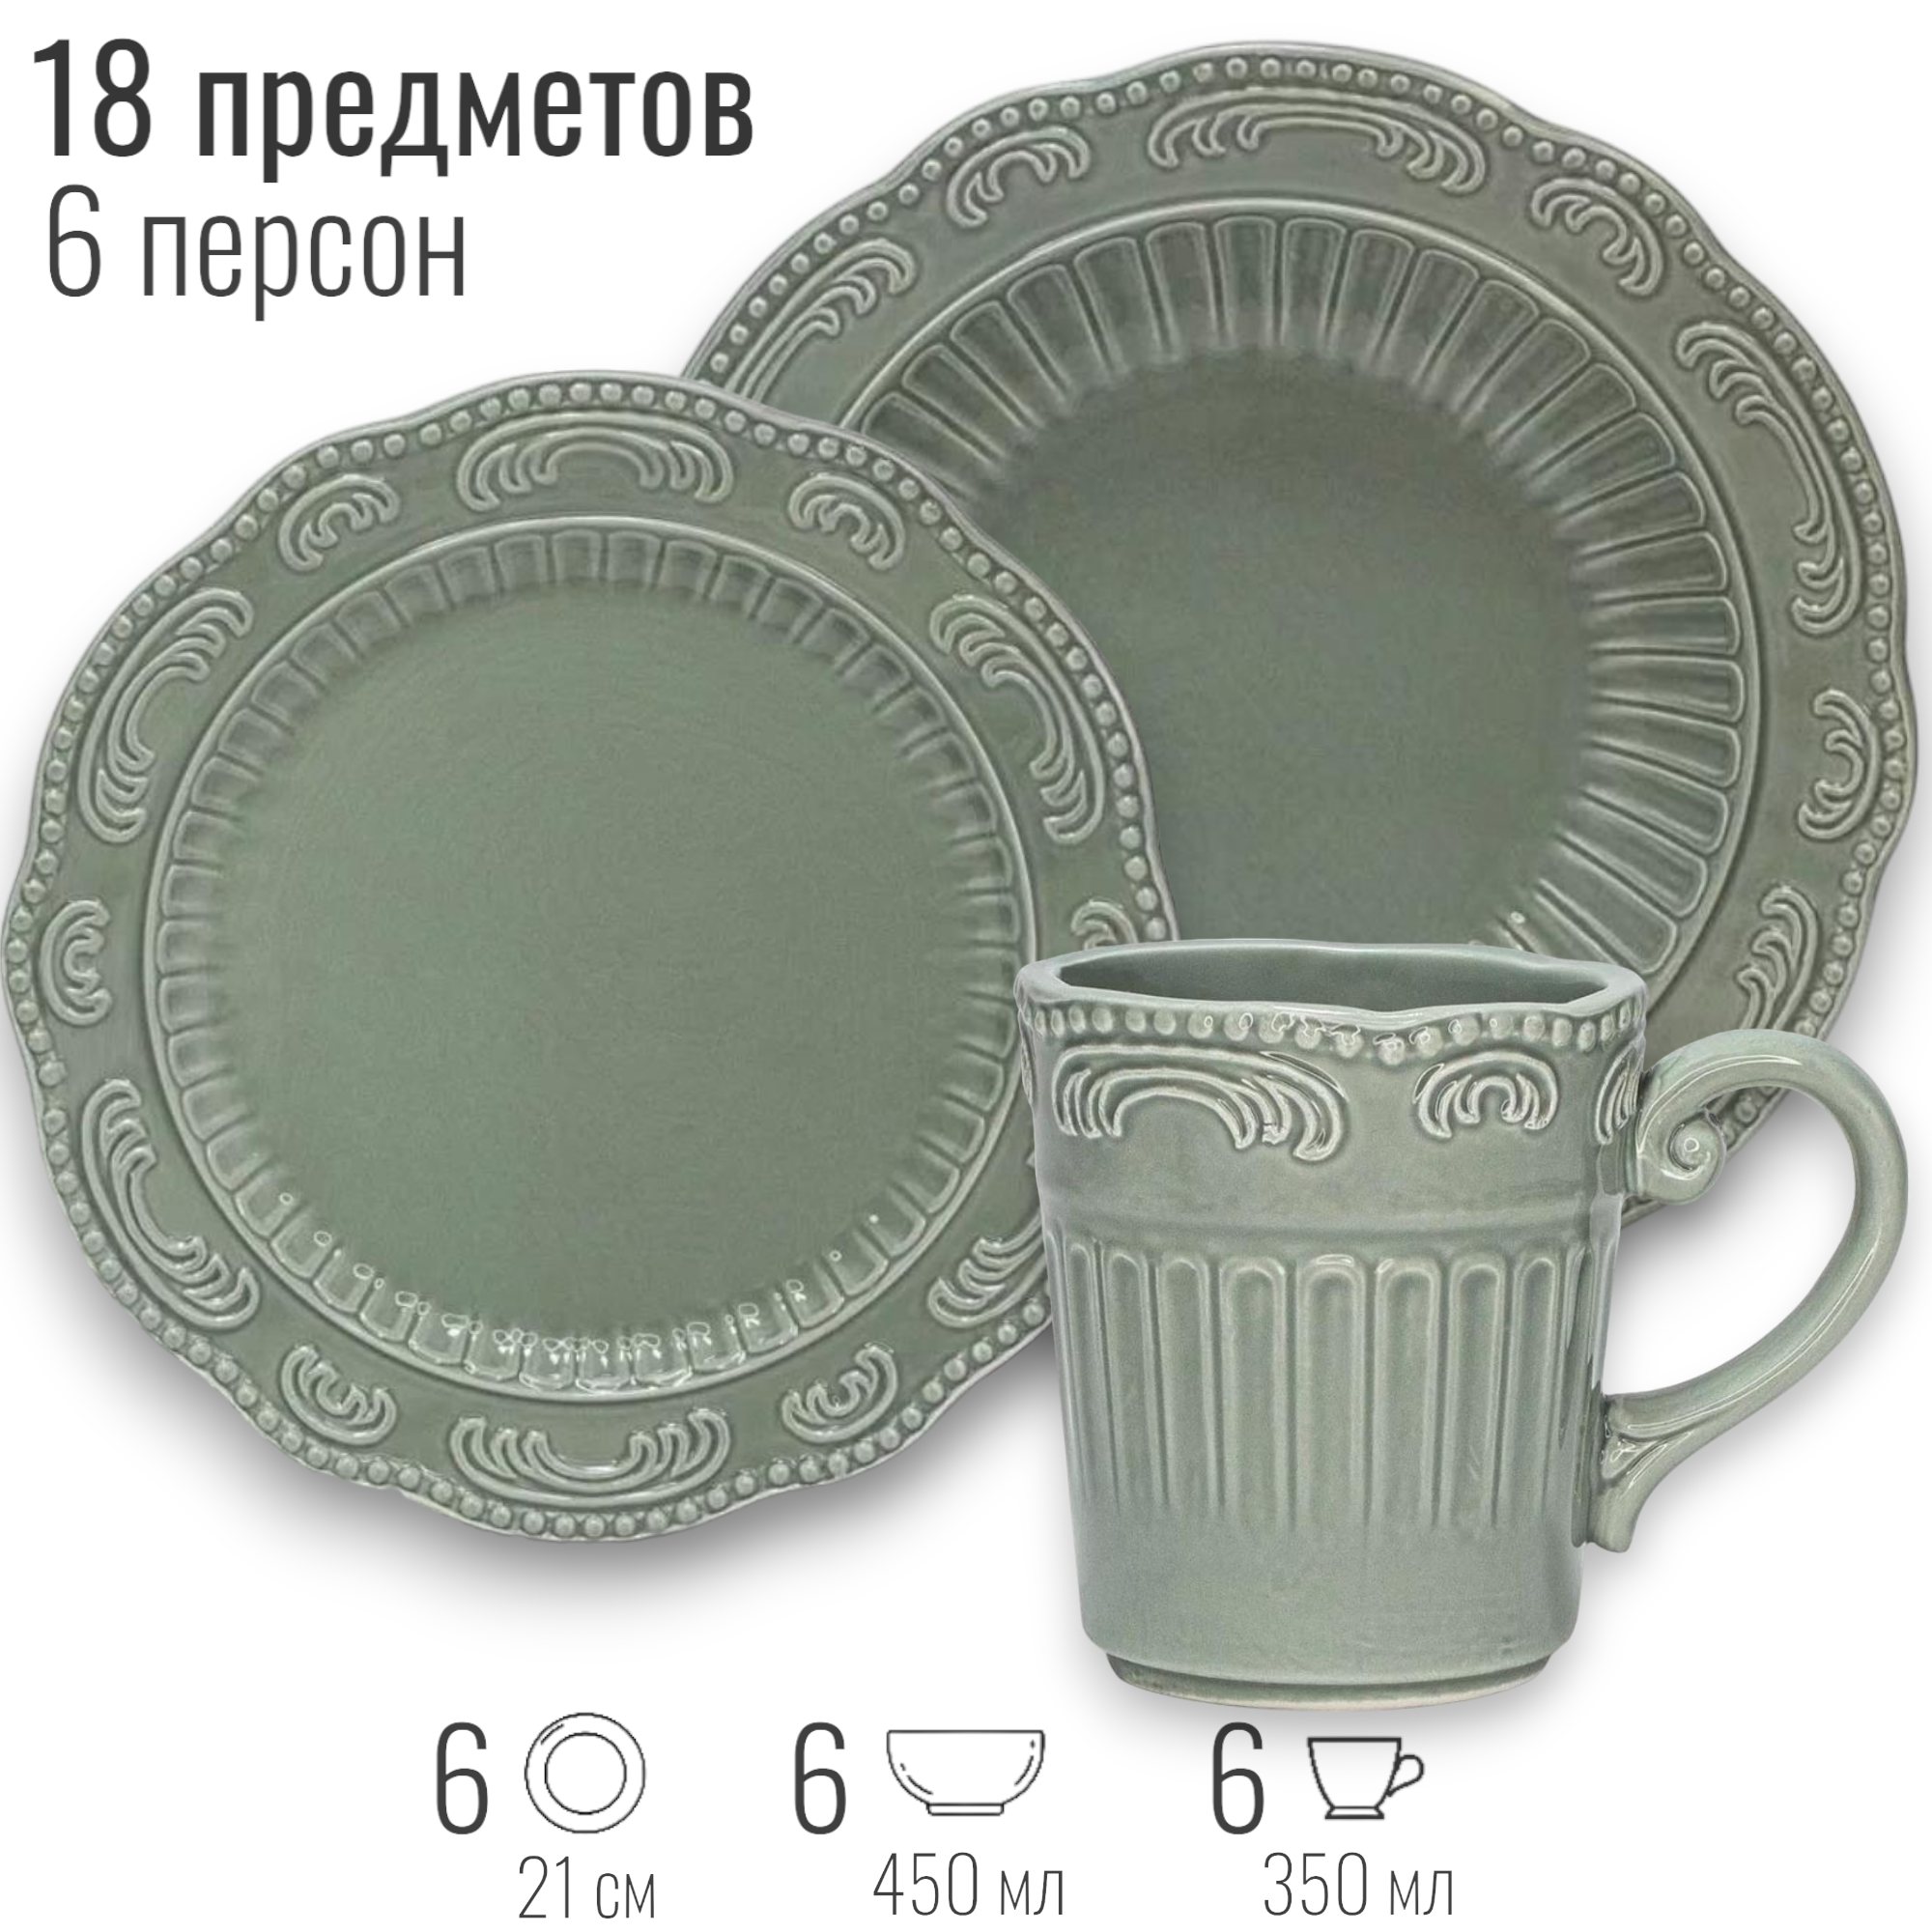 Набор посуды столовой на 6 персон, 18 предметов "Барокко", цвет зеленый, керамика, сервиз обеденный